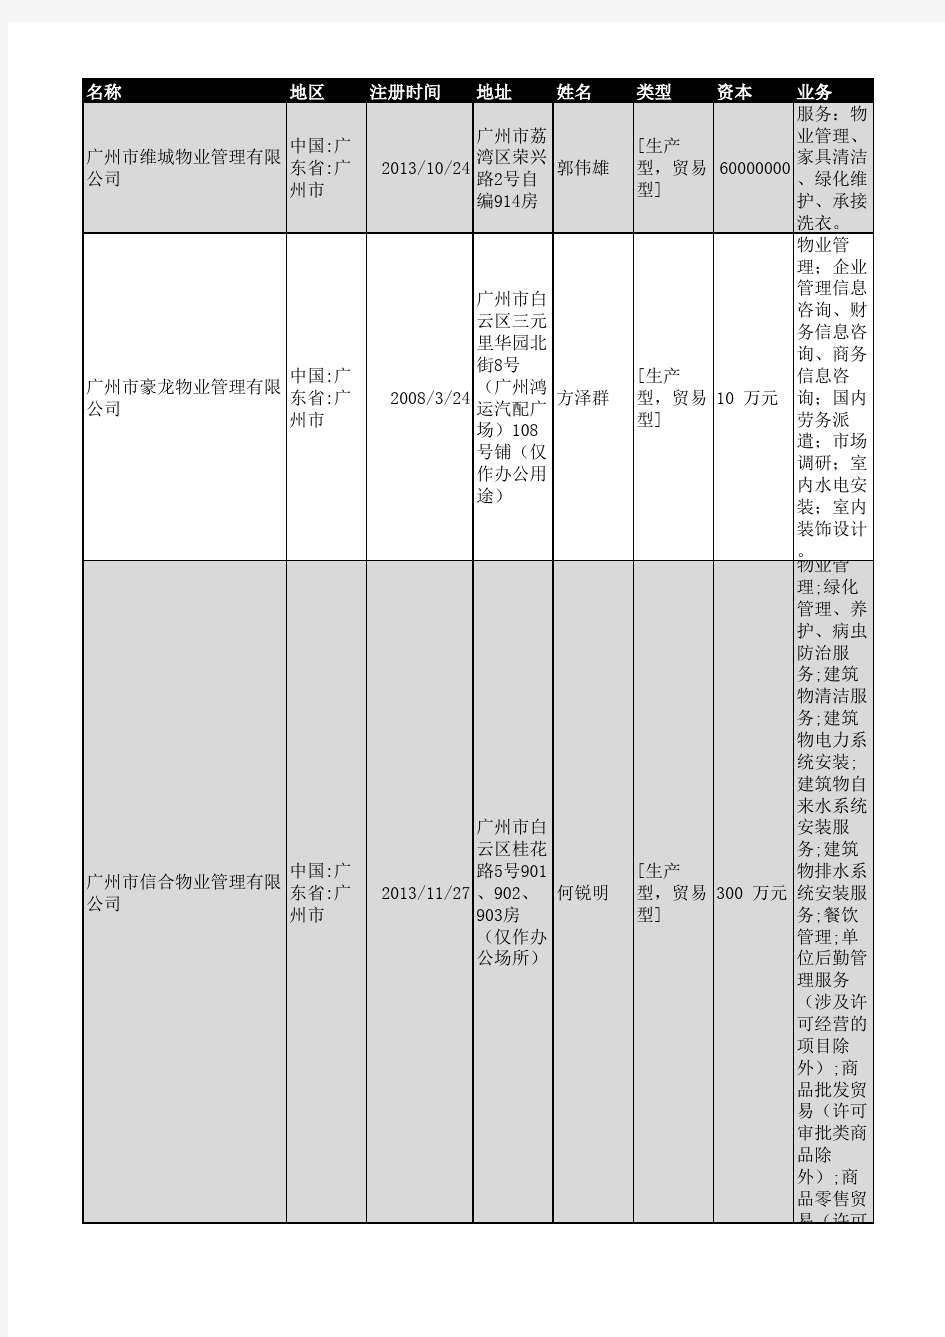 2018年广州市物业管理企业名录1736家